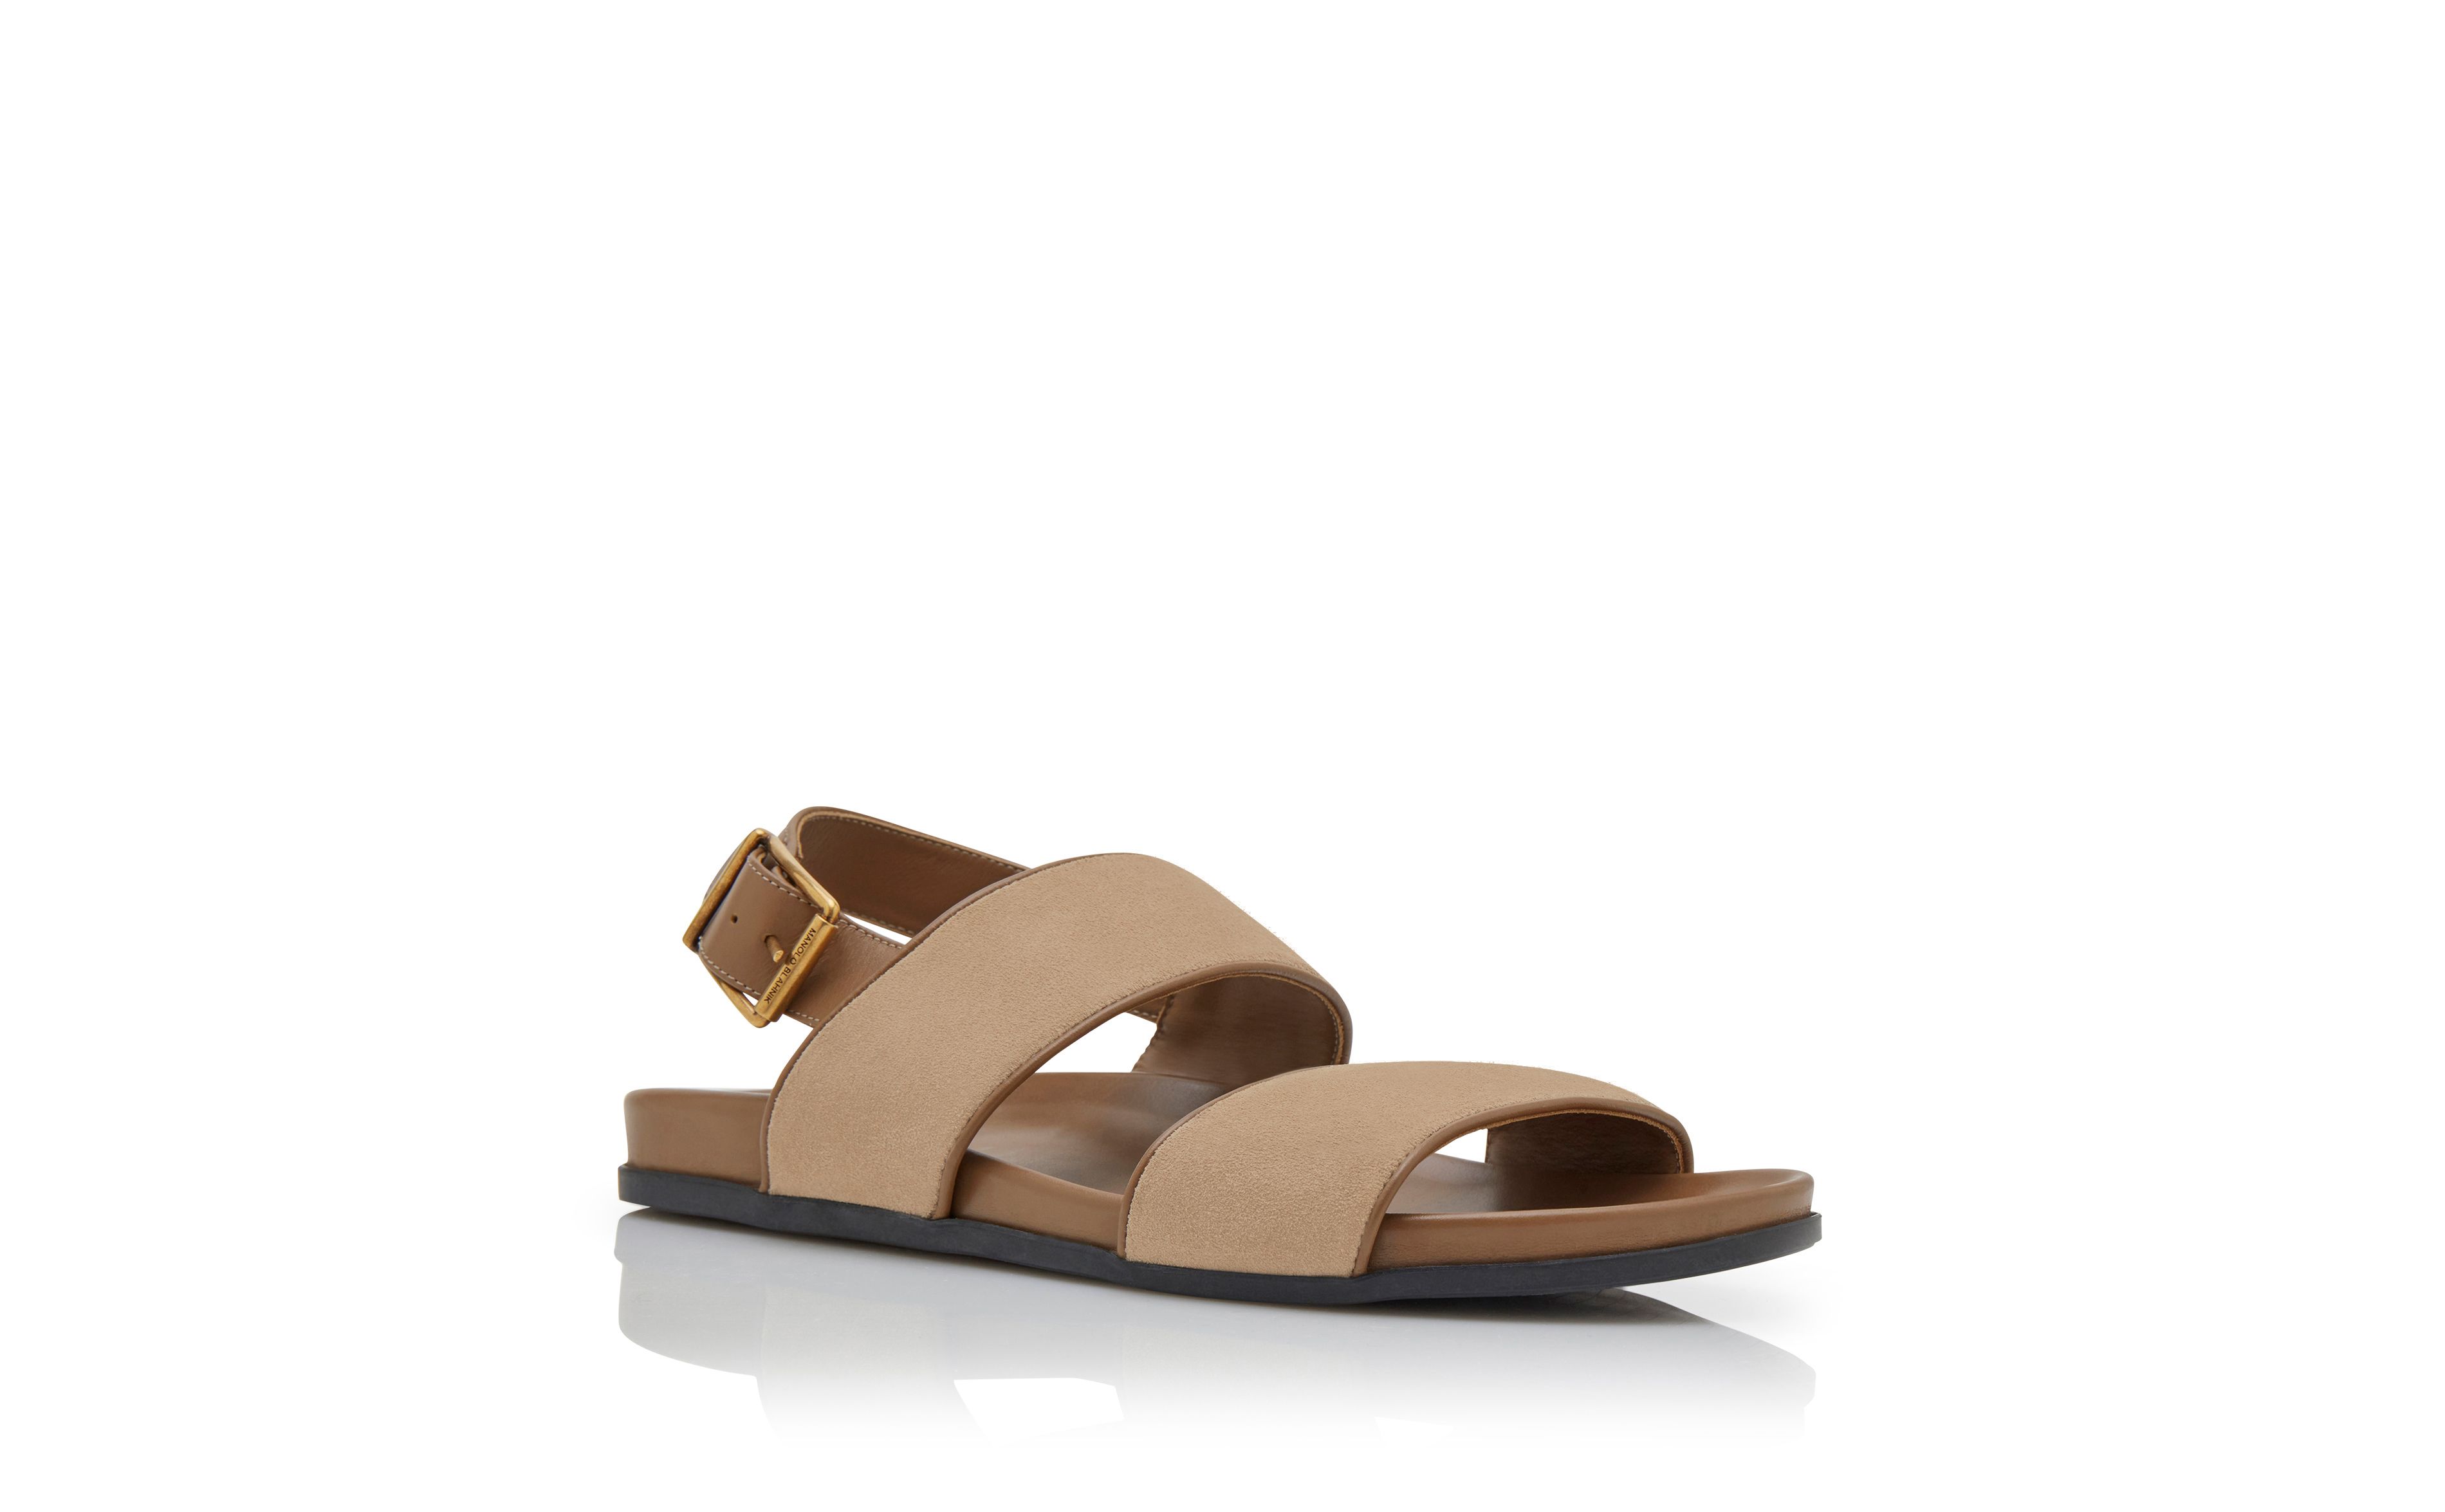 Designer Light Brown Suede Sandals - Image Upsell